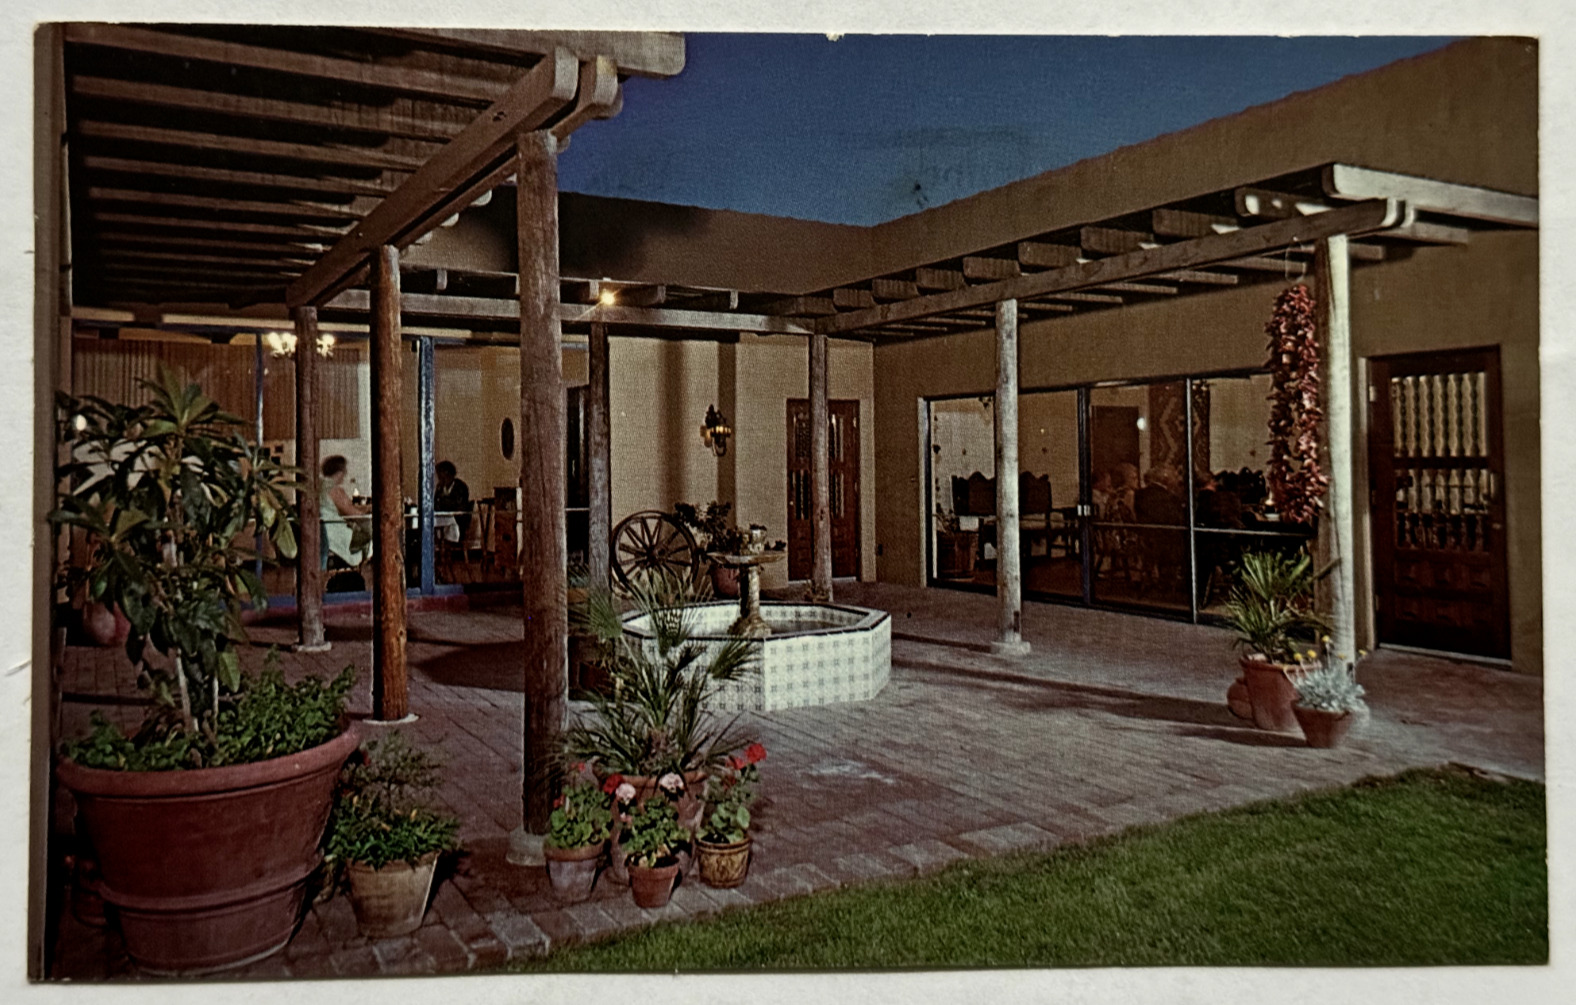 The Lodge On The Desert Alvernon Way Tucson Arizona AZ Exterior 1973 Postcard